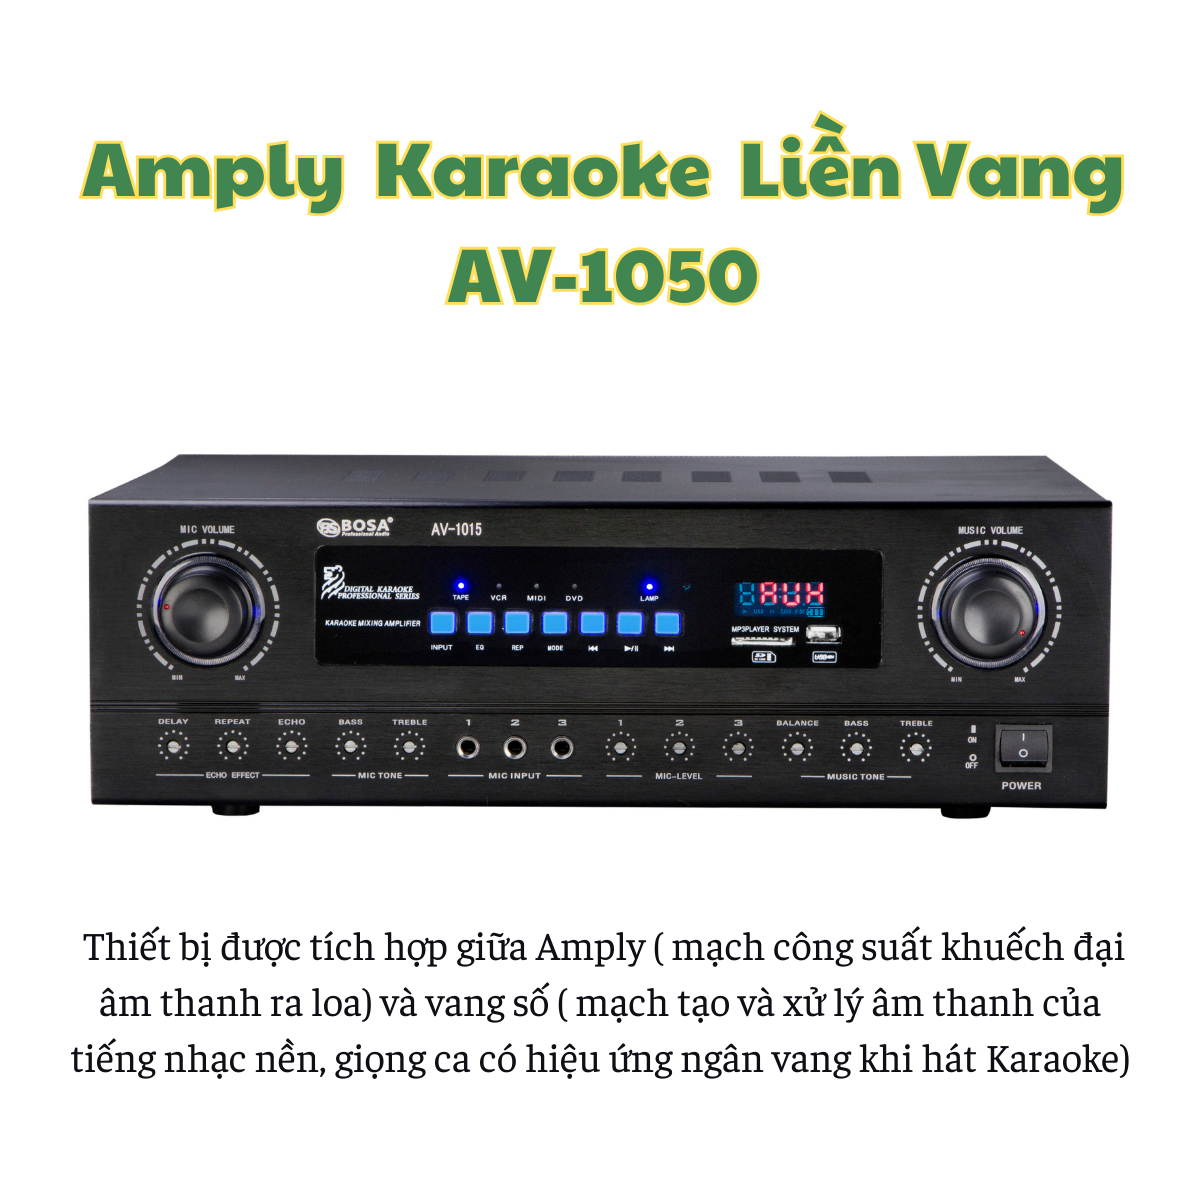 Amply Karaoke Gunssi AV-1015 tích hợp Cục Đẩy Liền Vang Công suất 80W*2. Bảo Hành Chính Hãng 12 tháng.